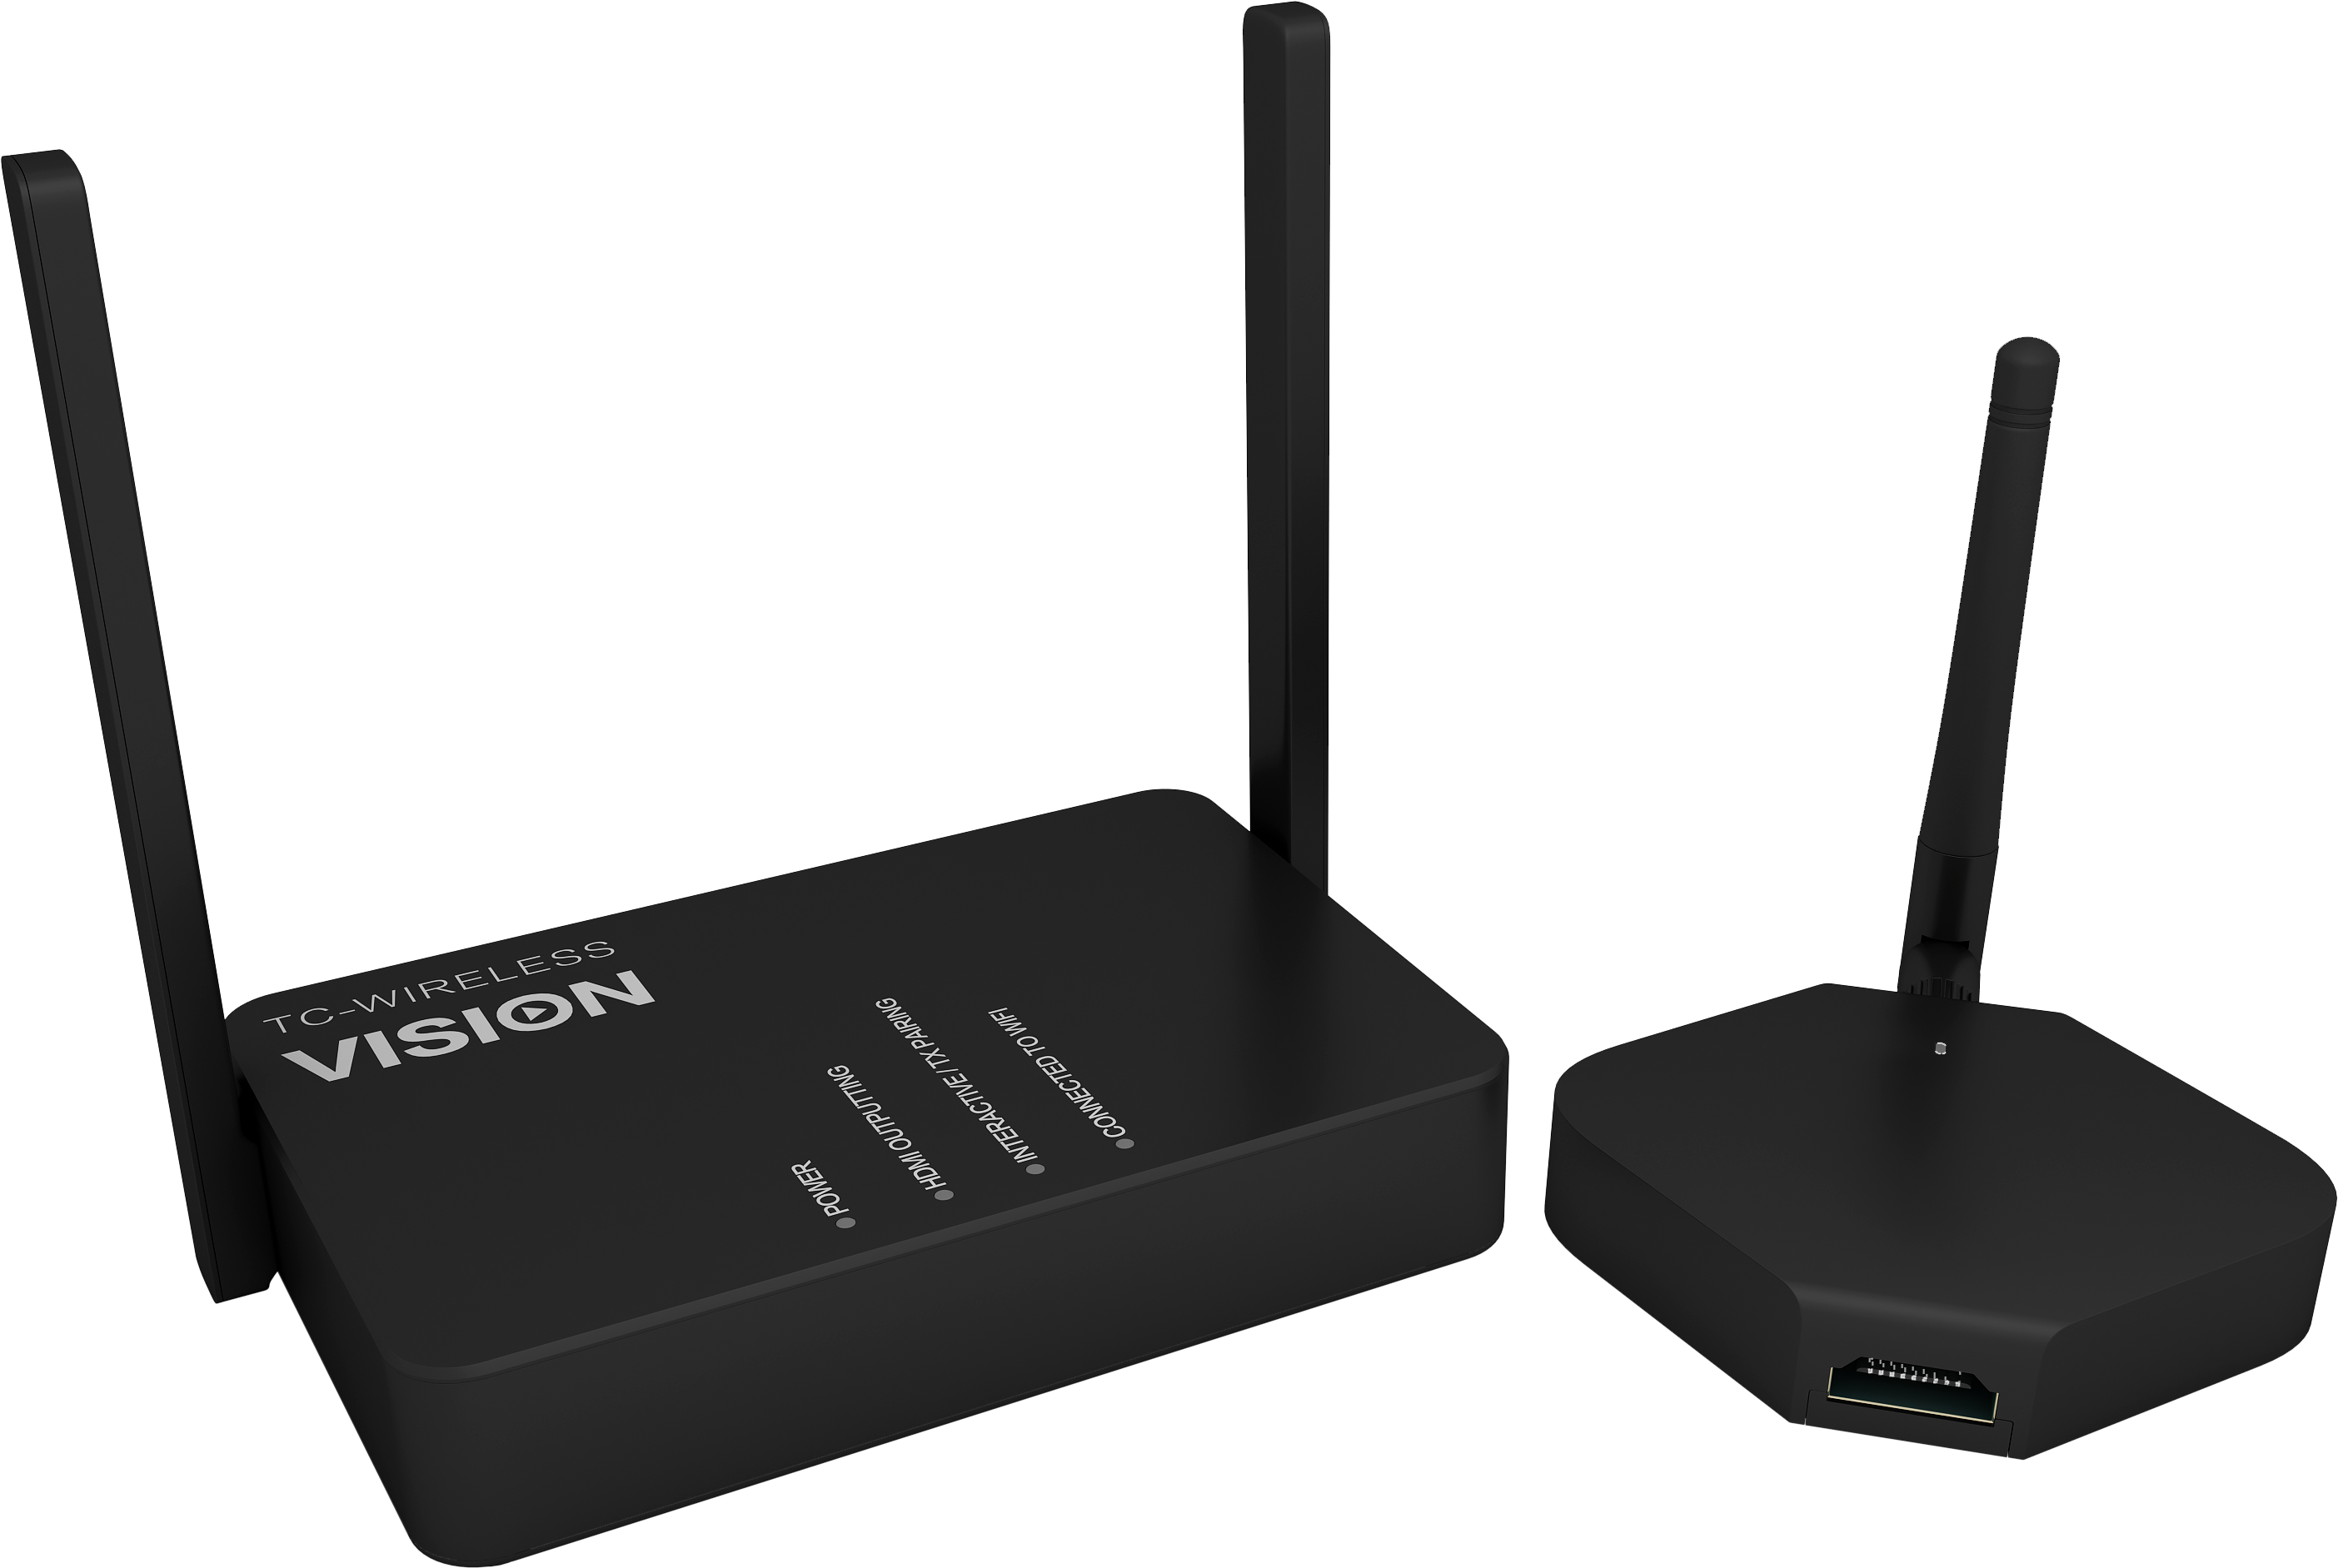 Vision als Erster auf dem Markt mit kabellosem HDMI und USB.